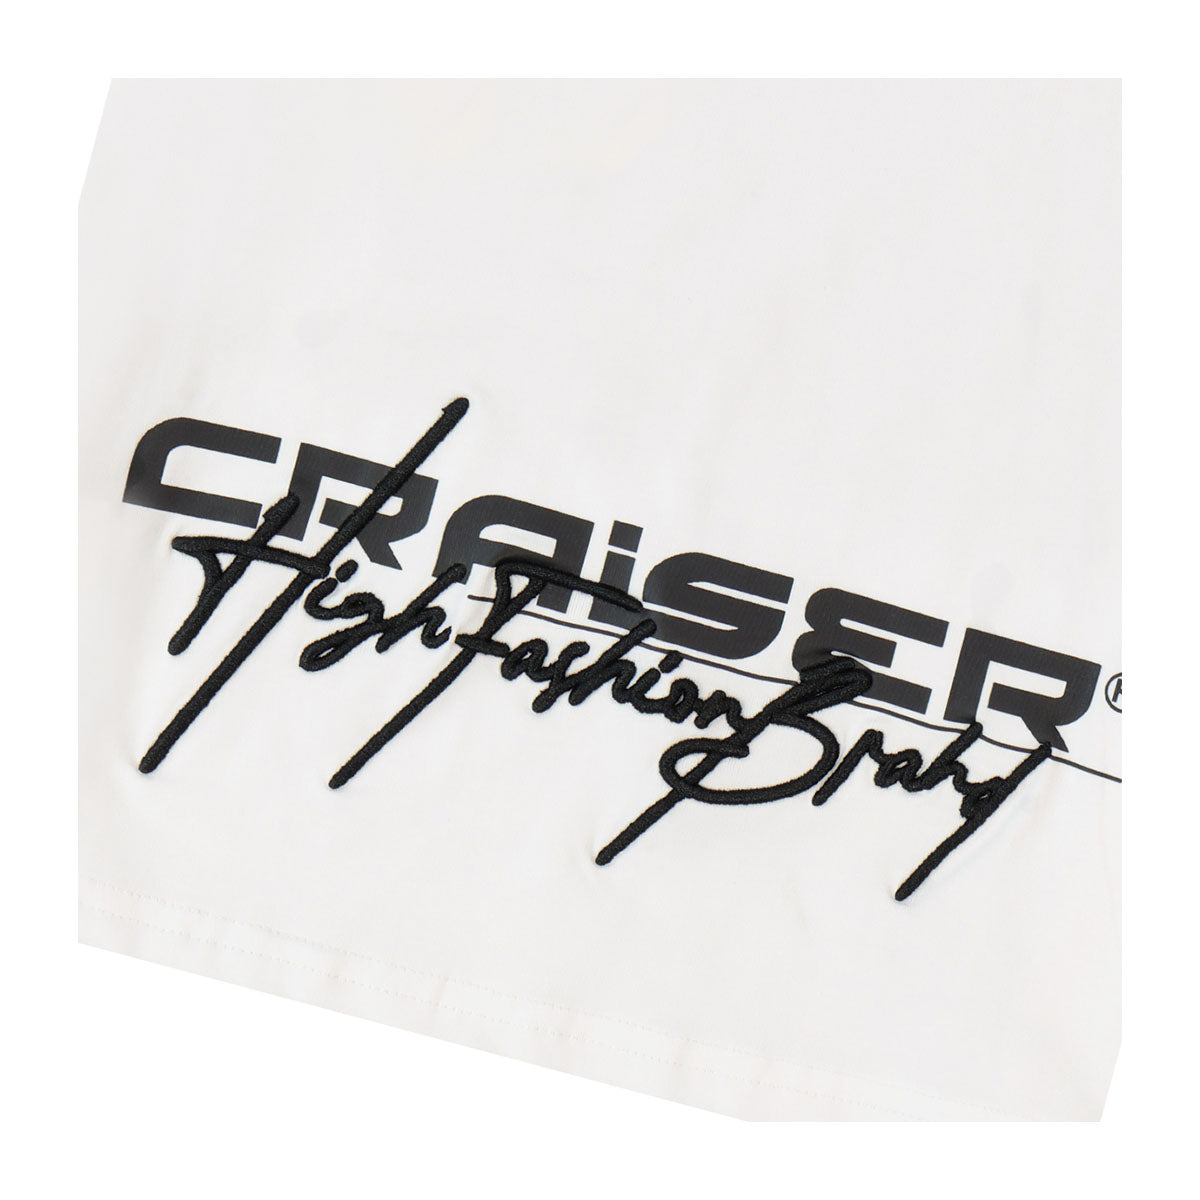 חולצת טי שרט CRAISER הדפס לוגו לילדים